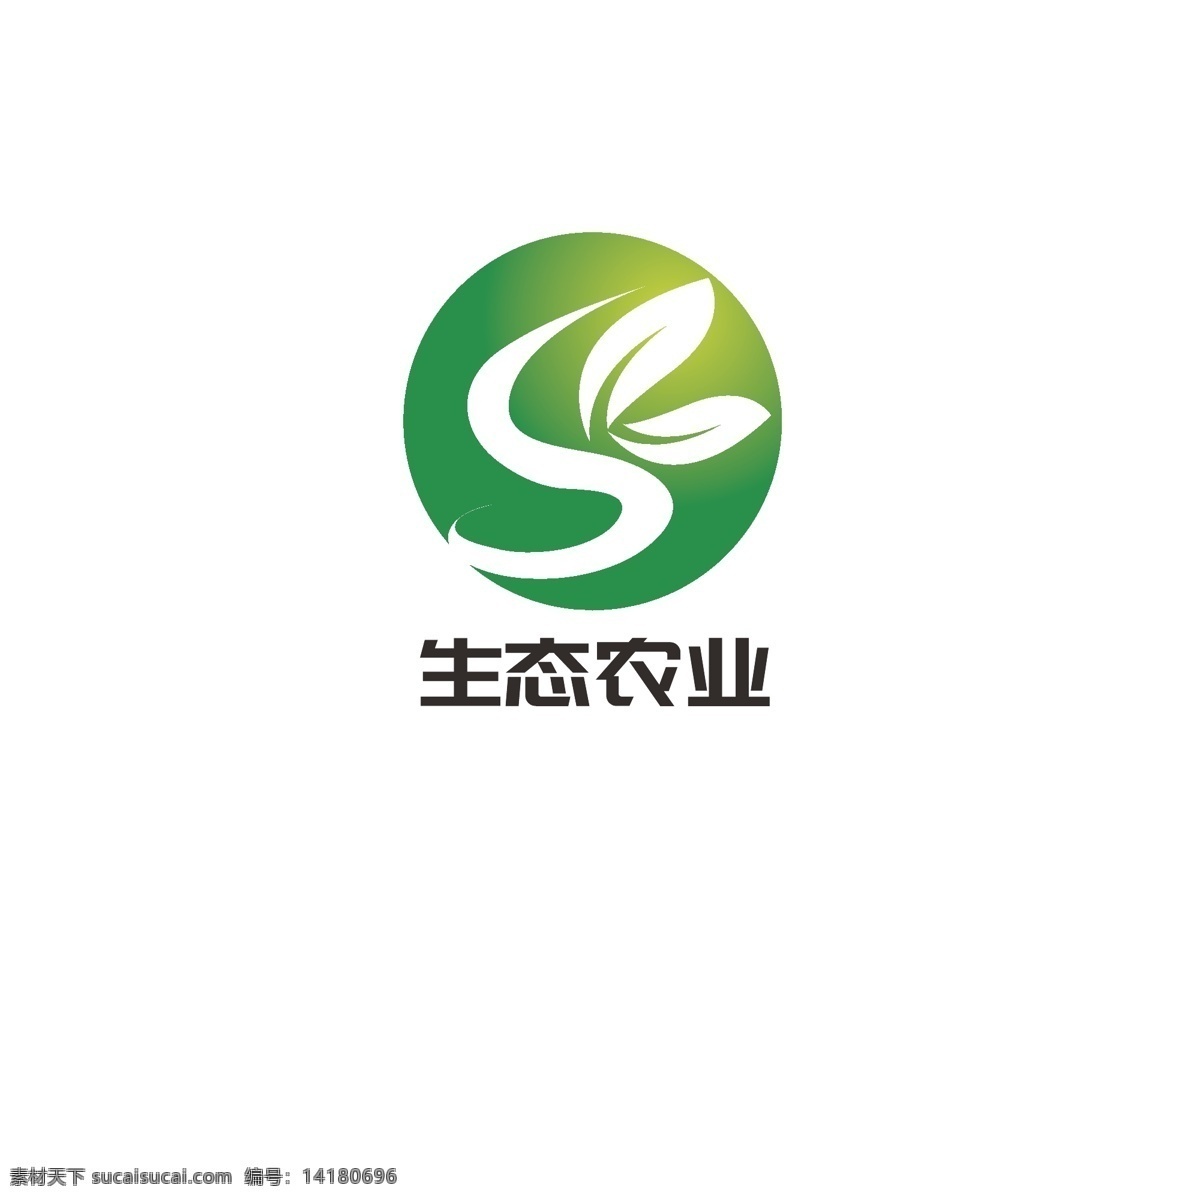 生态农业 logo 叶子 绿色 农业 有机 健康 字母s 环保生态